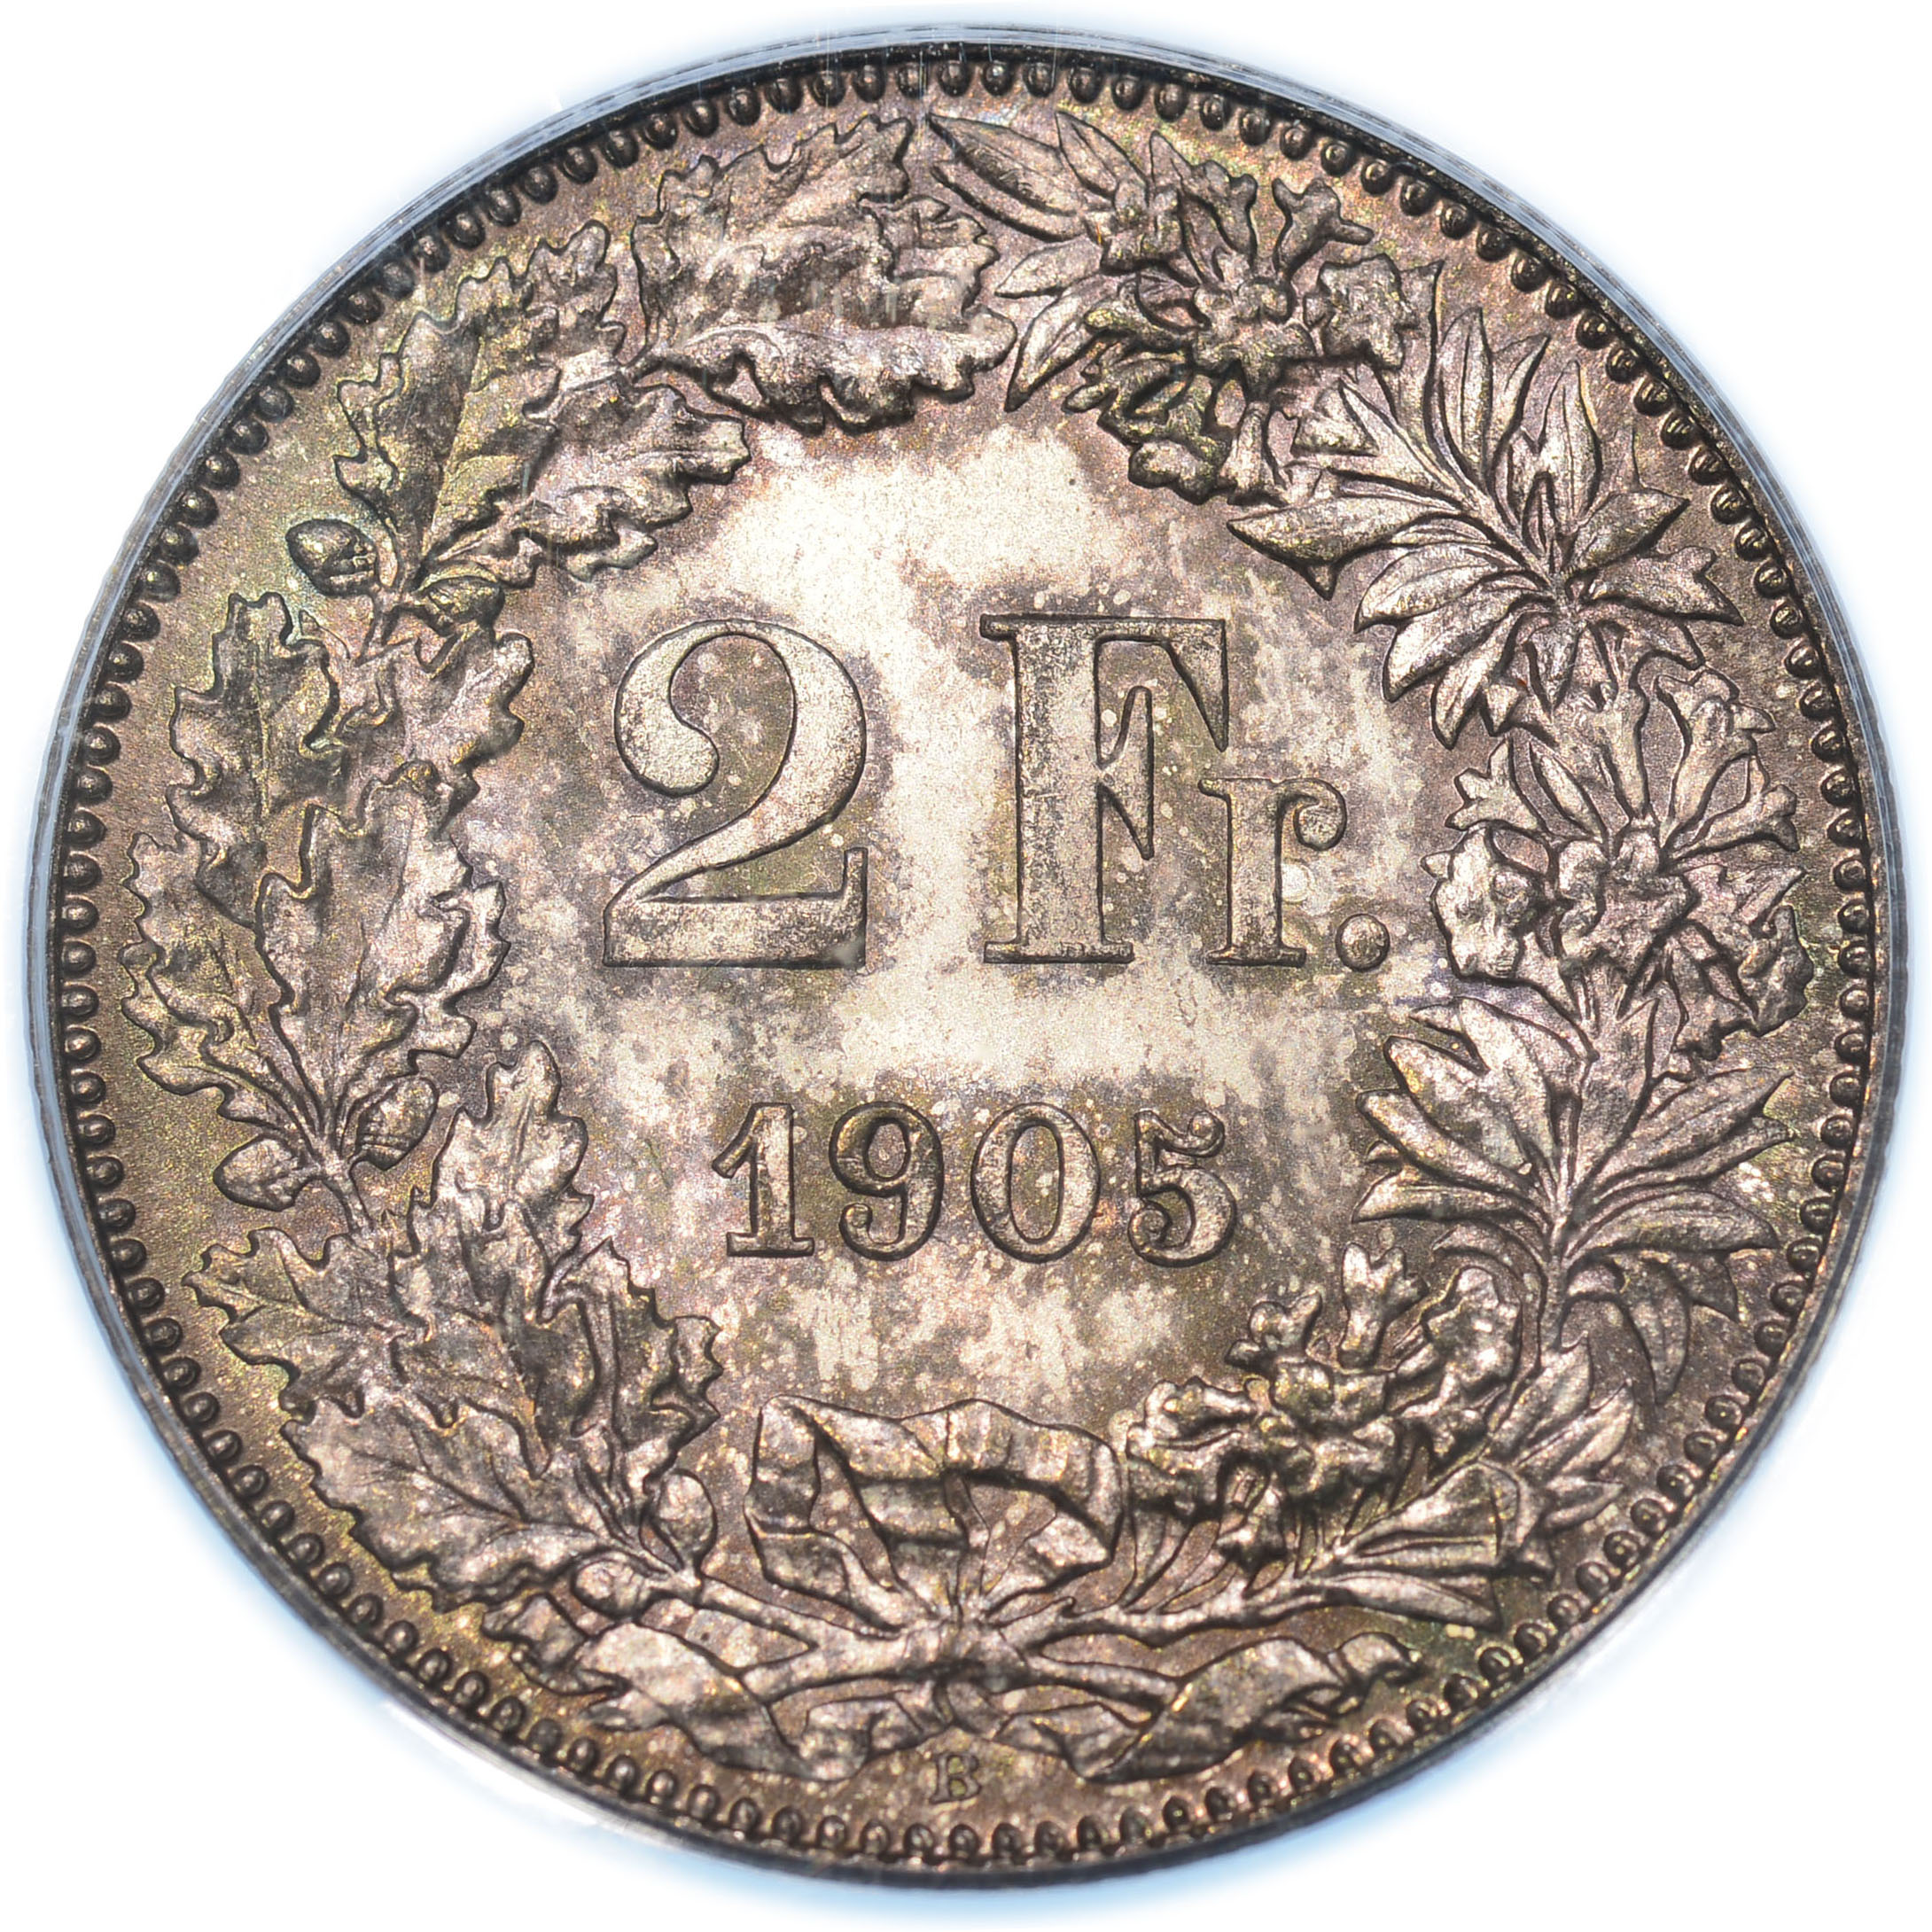 2 Franken, 1905, MS 65